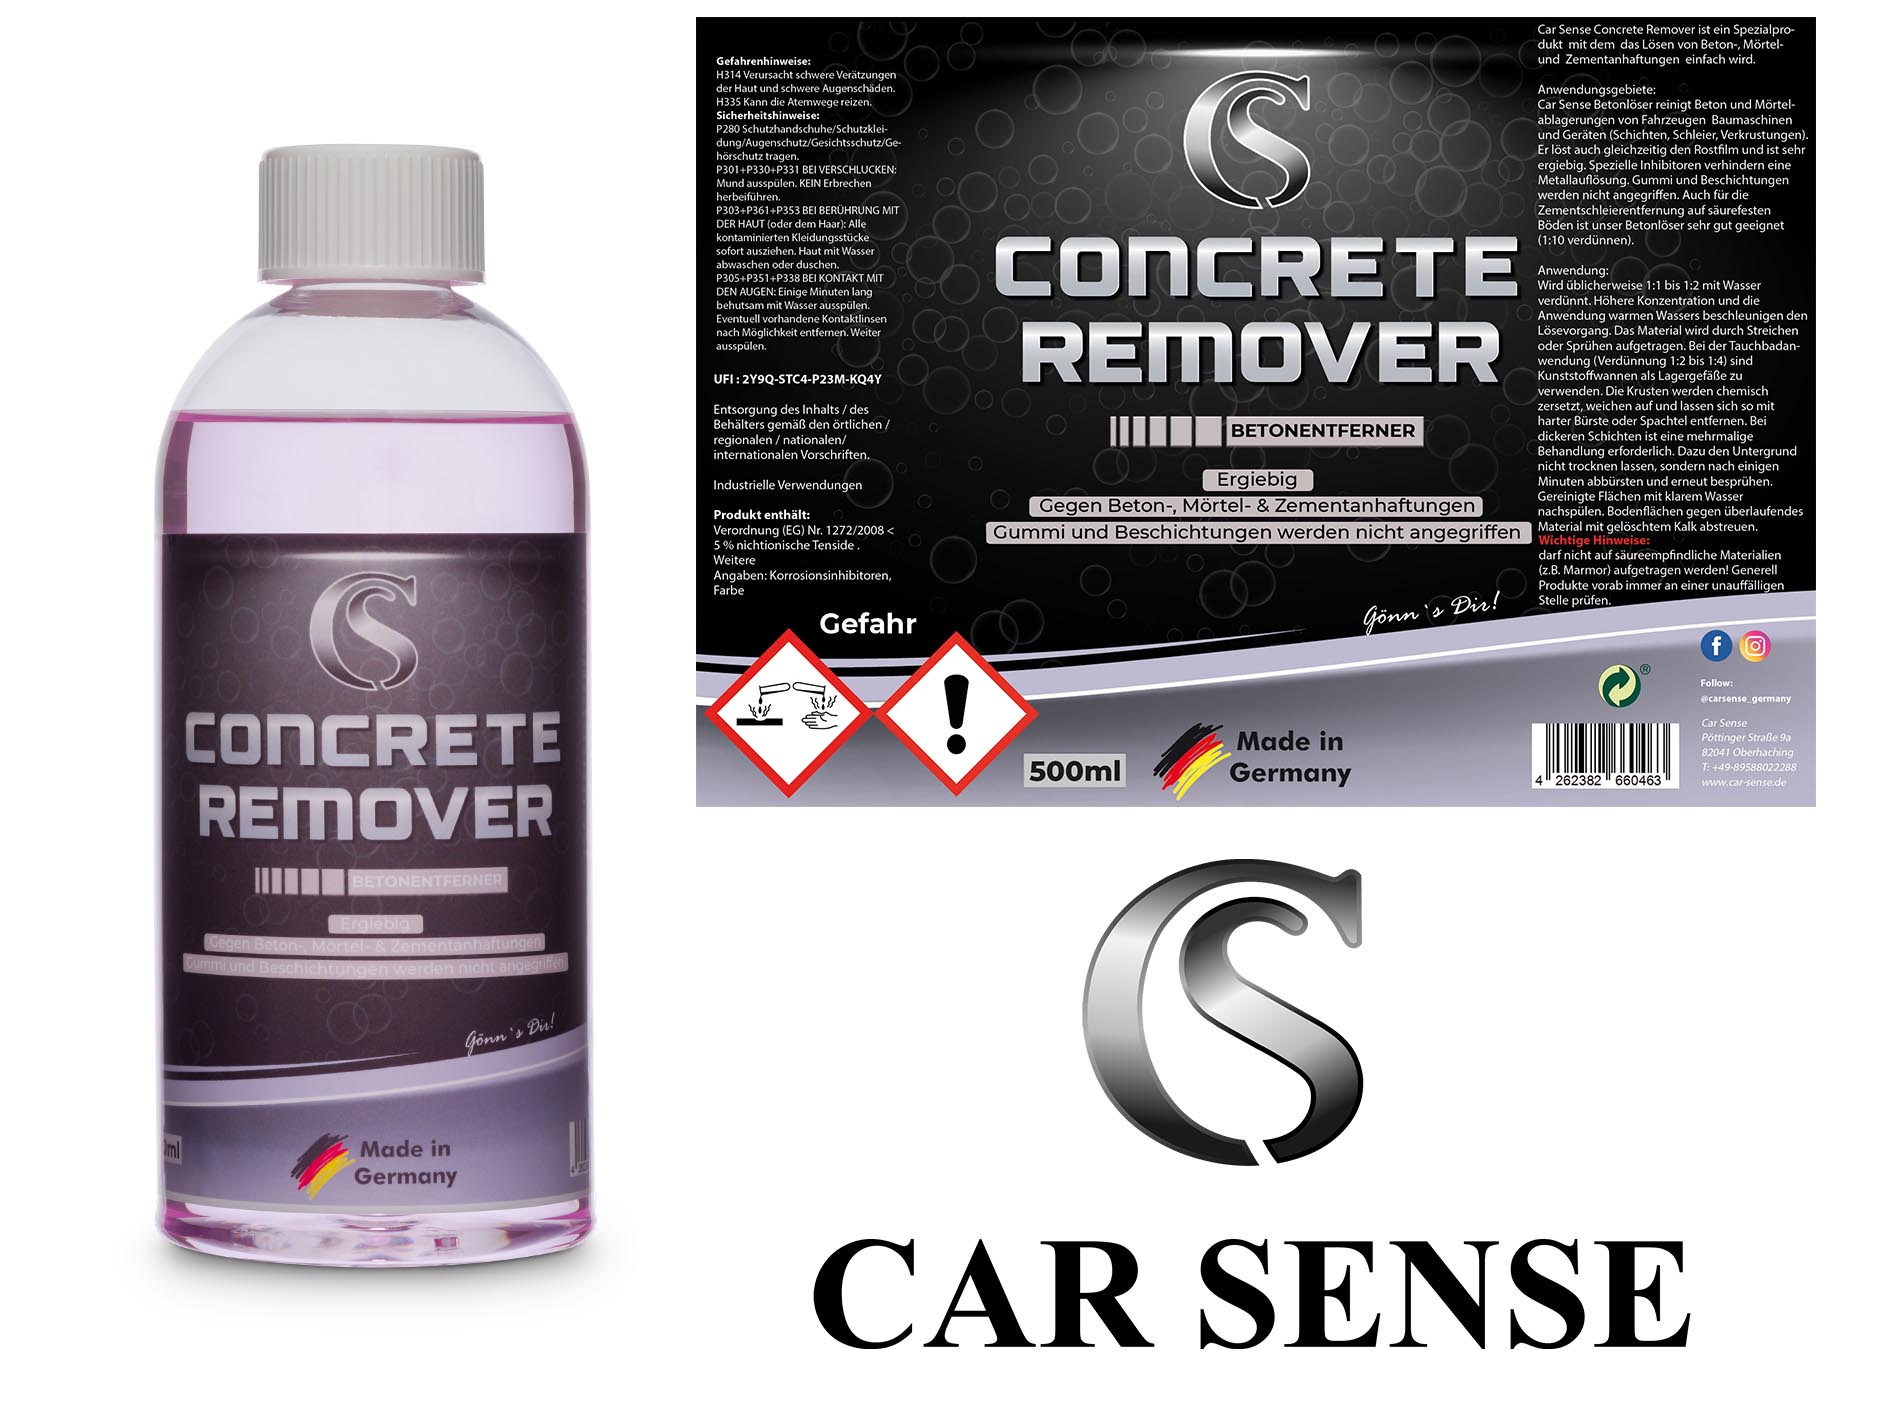 Car Sense Concrete Remover 0,5 L ist ein Spezialprodukt zum Lösen von Beton-, Mörtel- und Zement